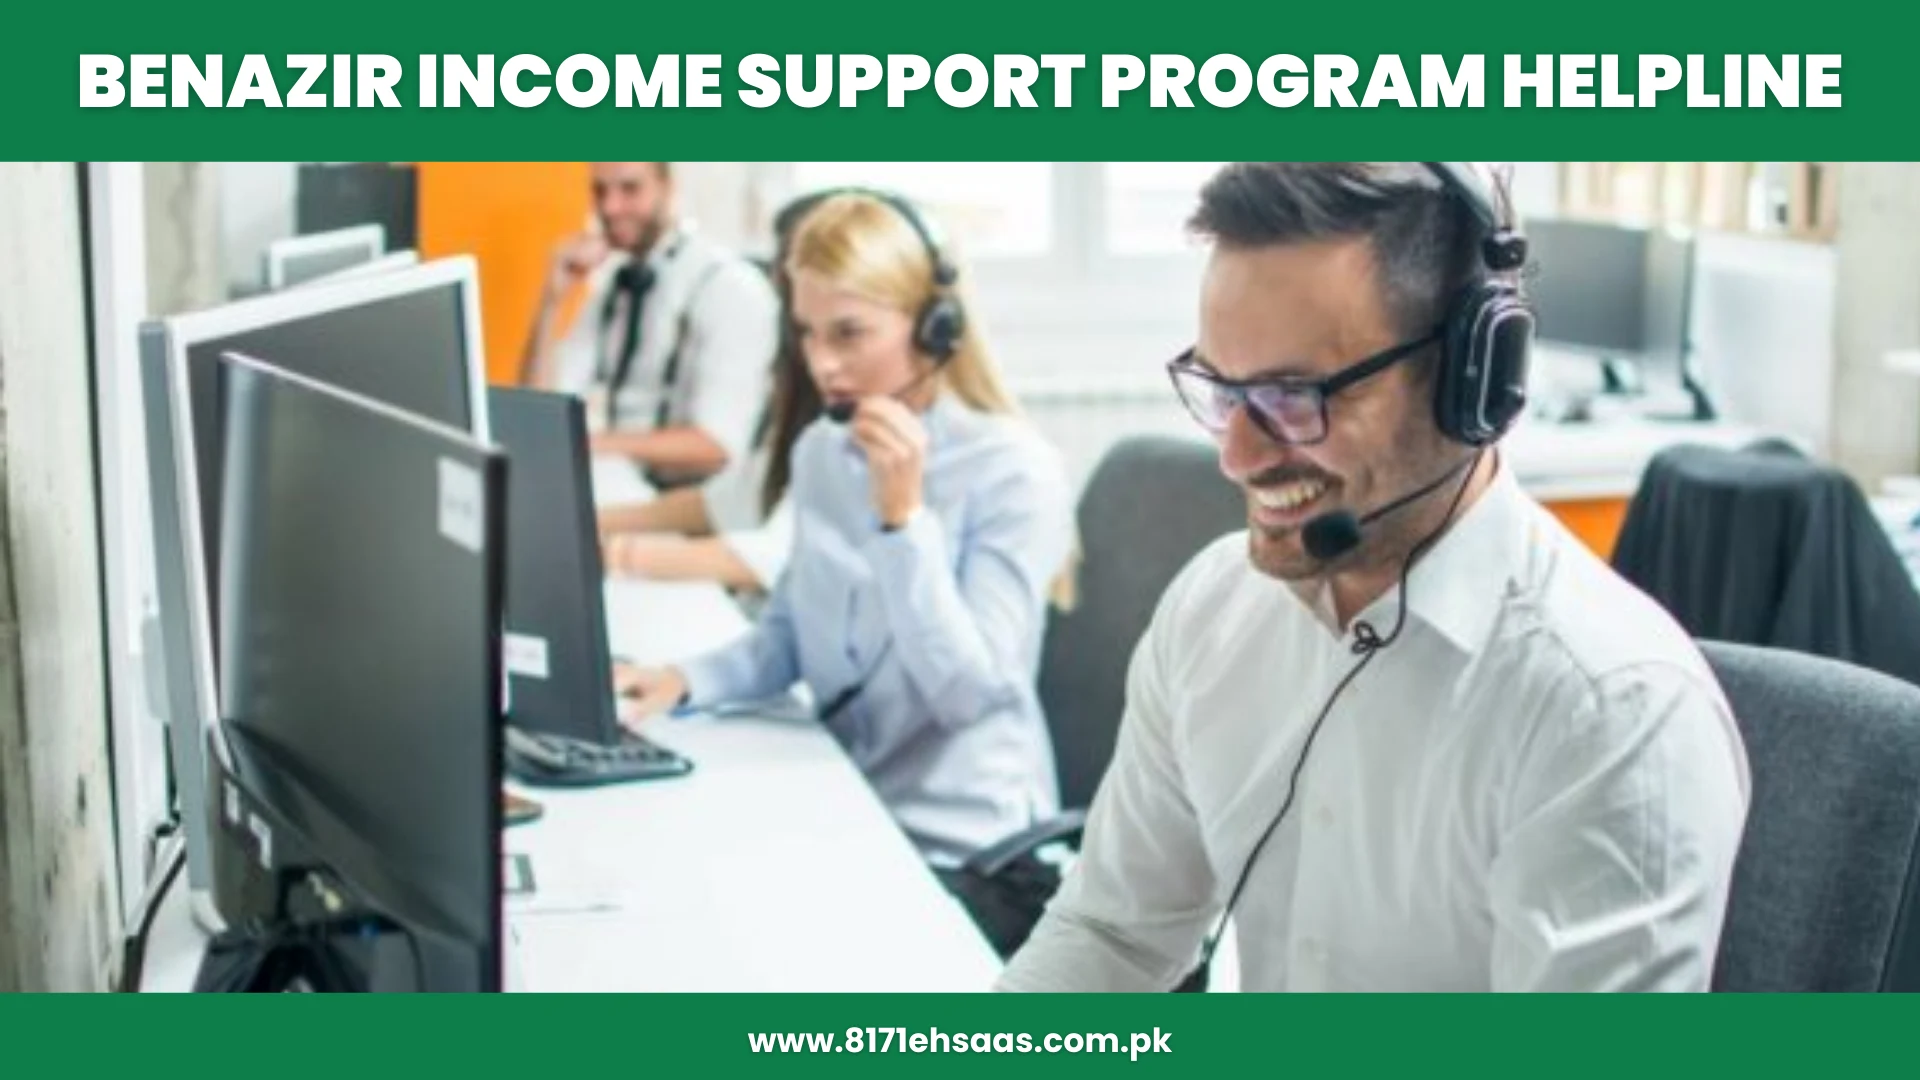 Benazir Income Support program helpline